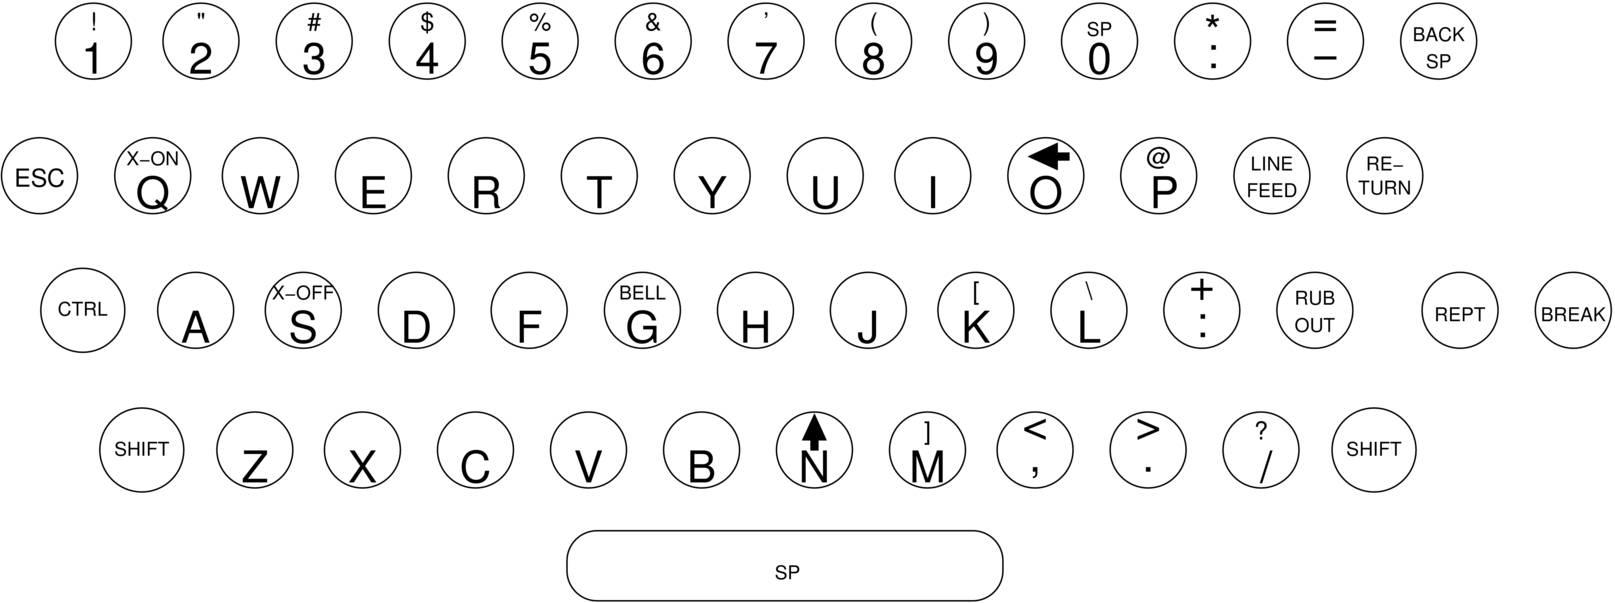 Figure 23: Teletype ASR-33 keyboard layout. Source: Wikipedia.